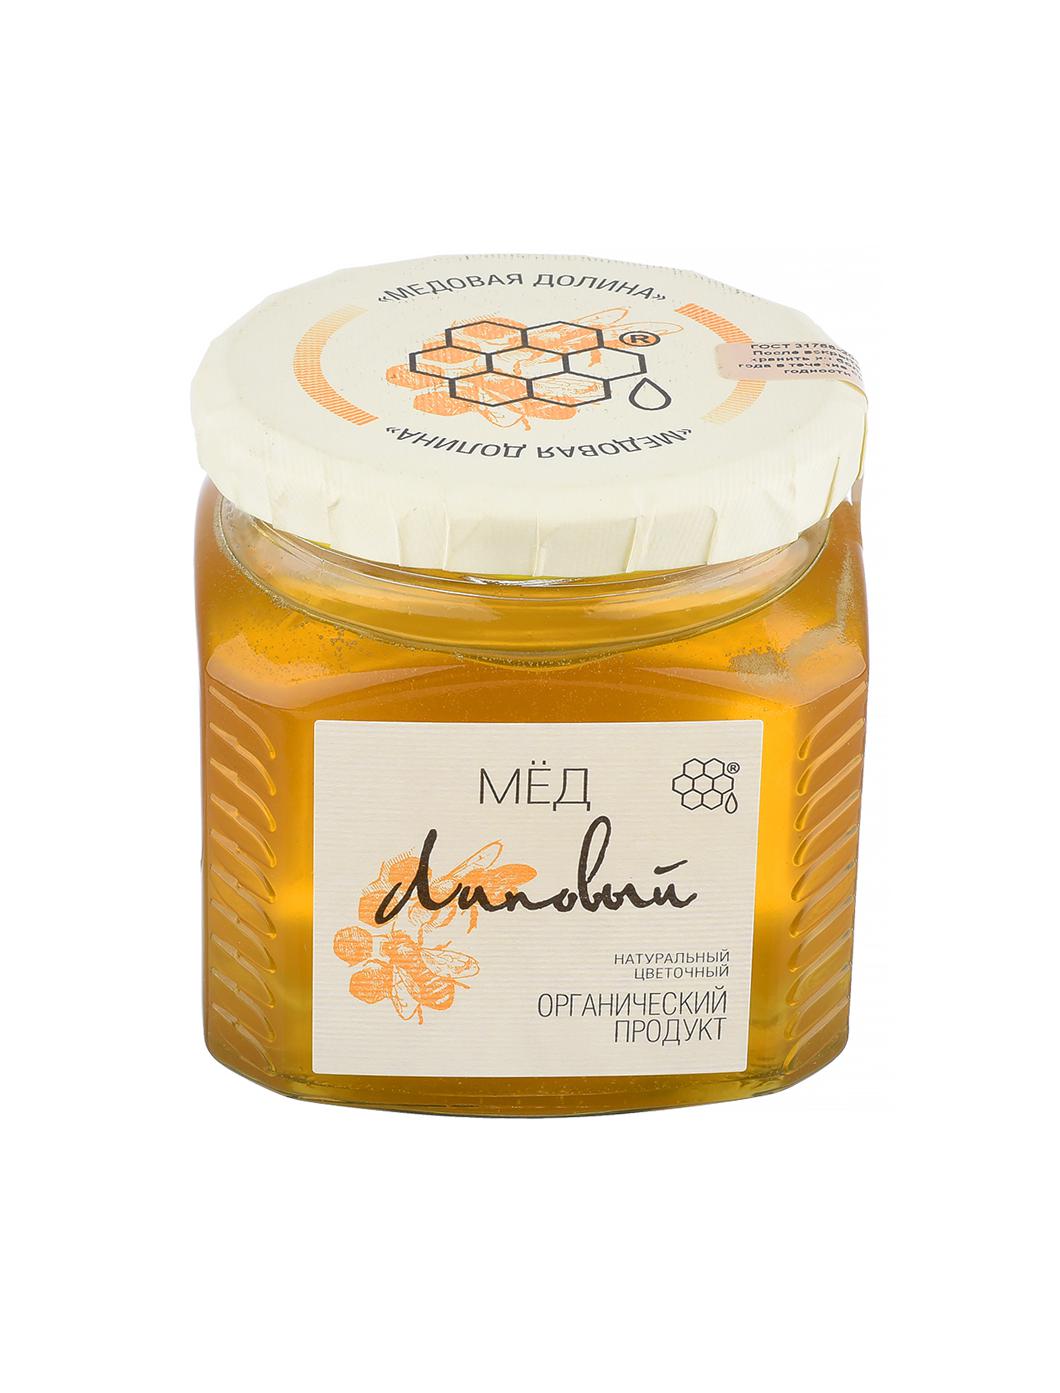 Мед натуральный цветочный Липовый продукт 0,5 кг (б/стекло).